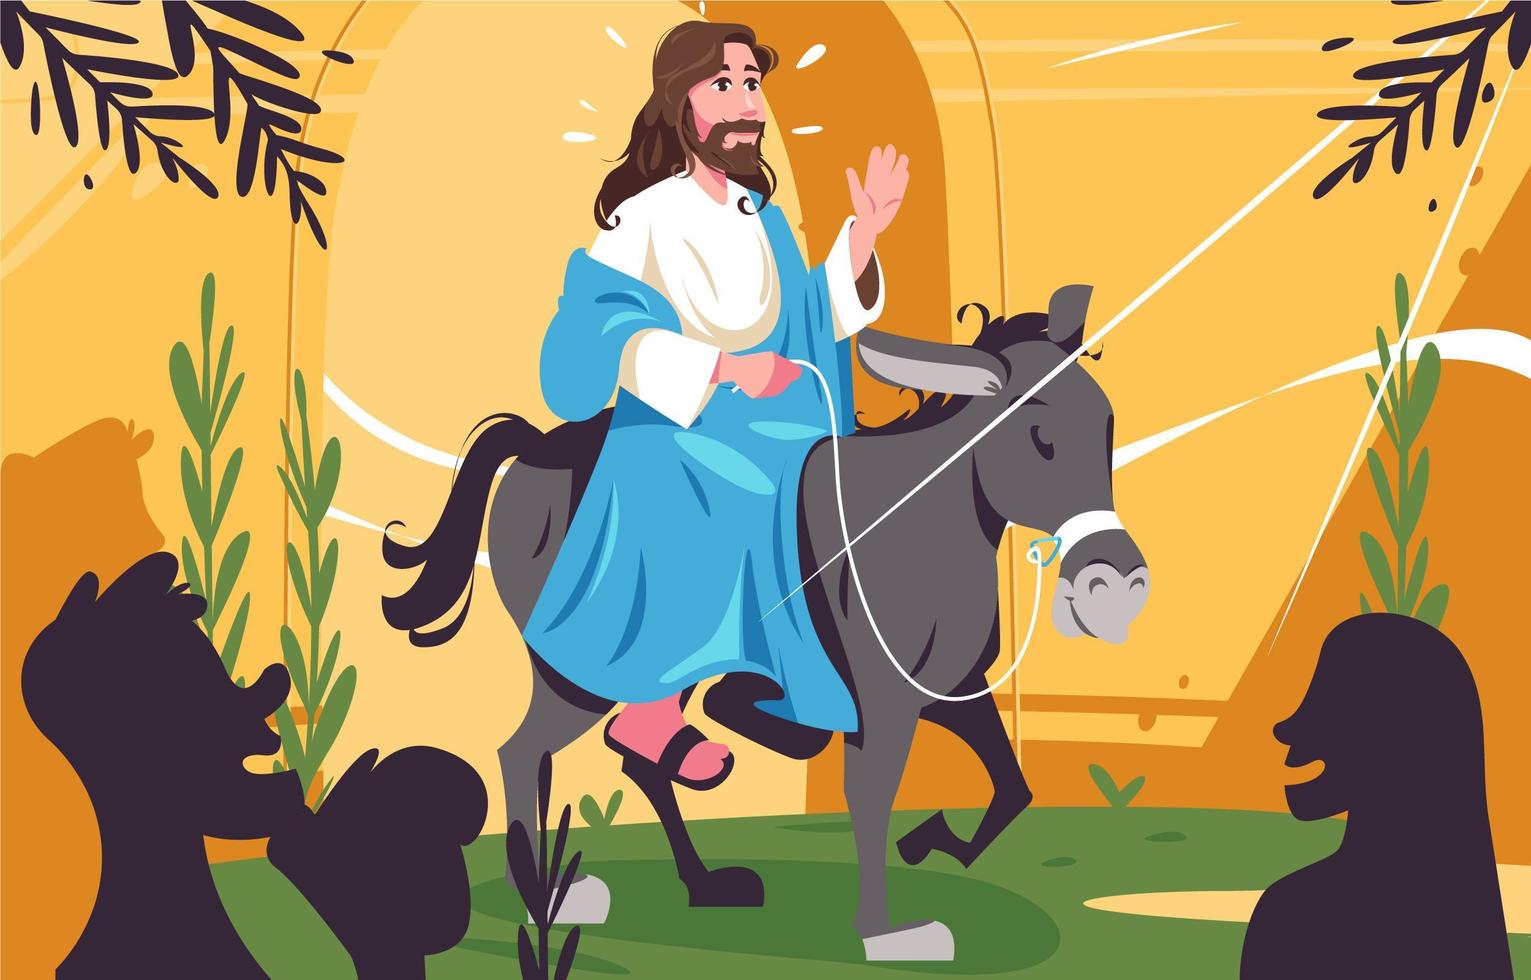 illustrazione di festività della domenica delle palme con gesù che cavalca un asino vettore